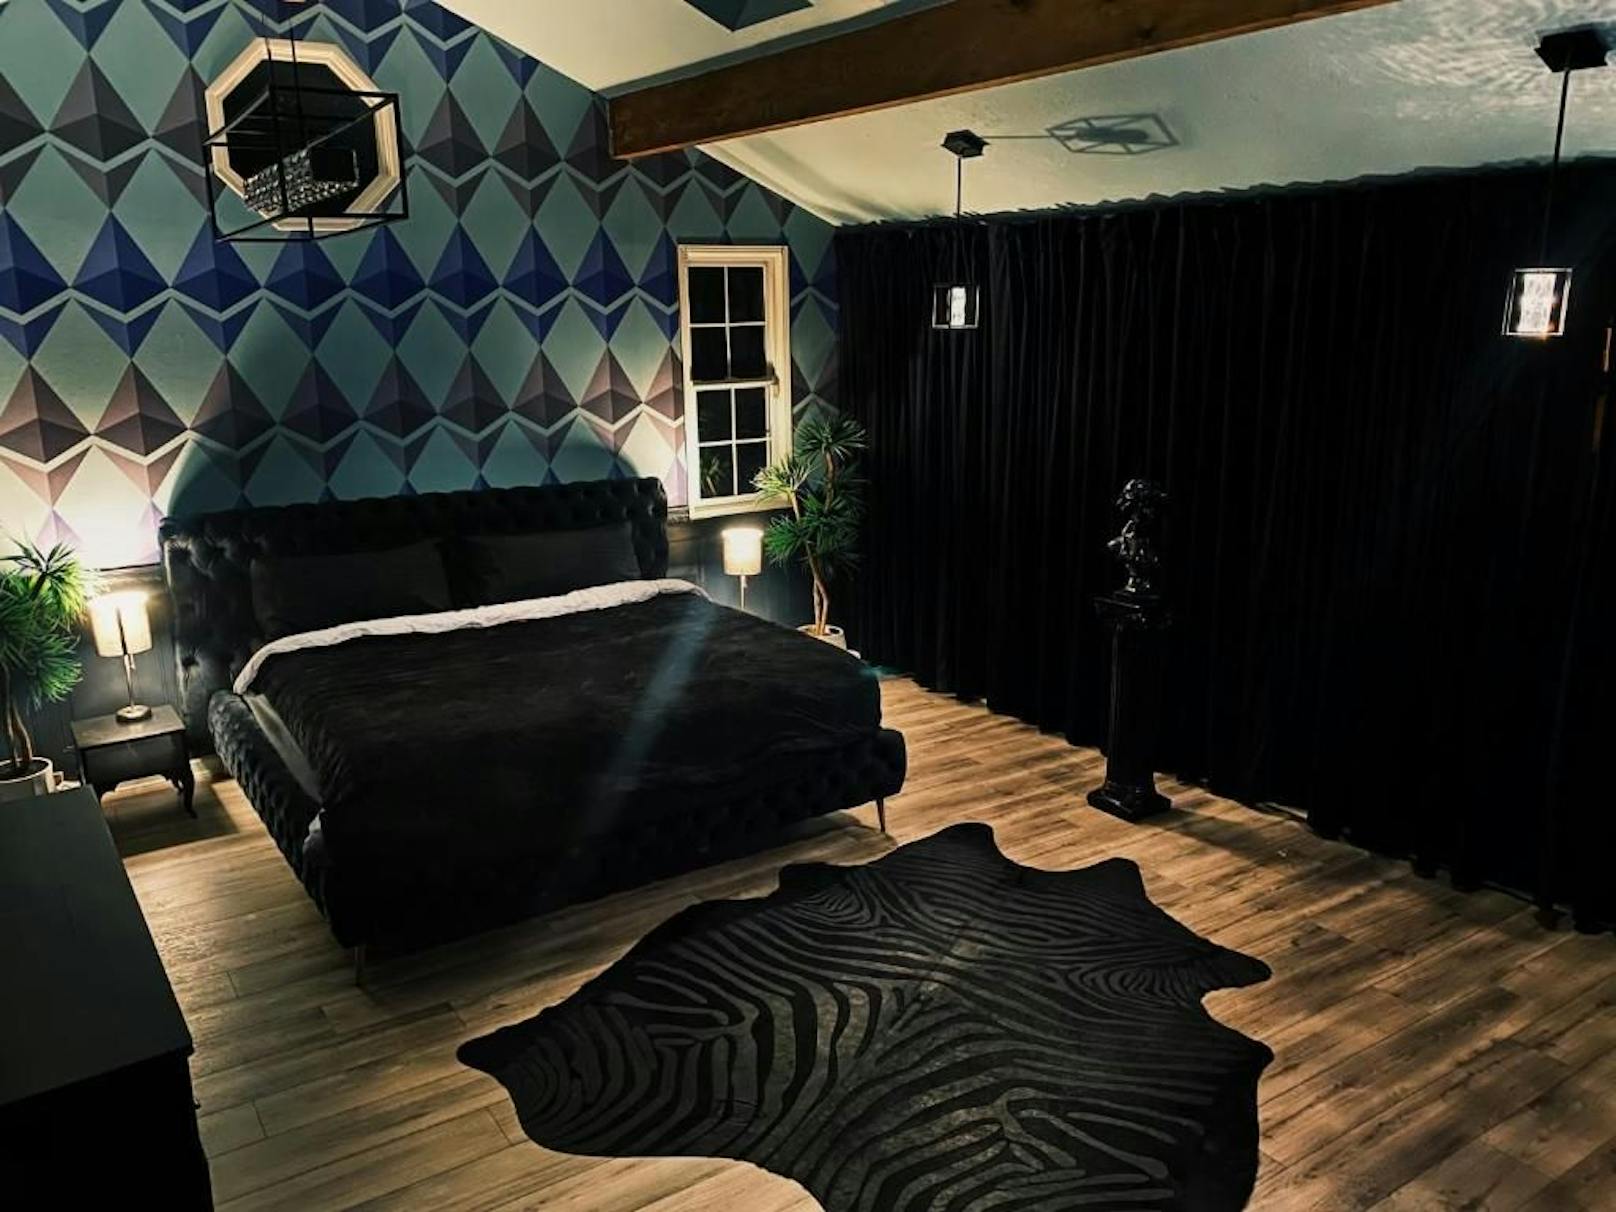 Immerhin: Das Ethereum-Schlafzimmer hat irgendwie Stil. Jedenfalls im Vergleich zu den anderen Zimmern.